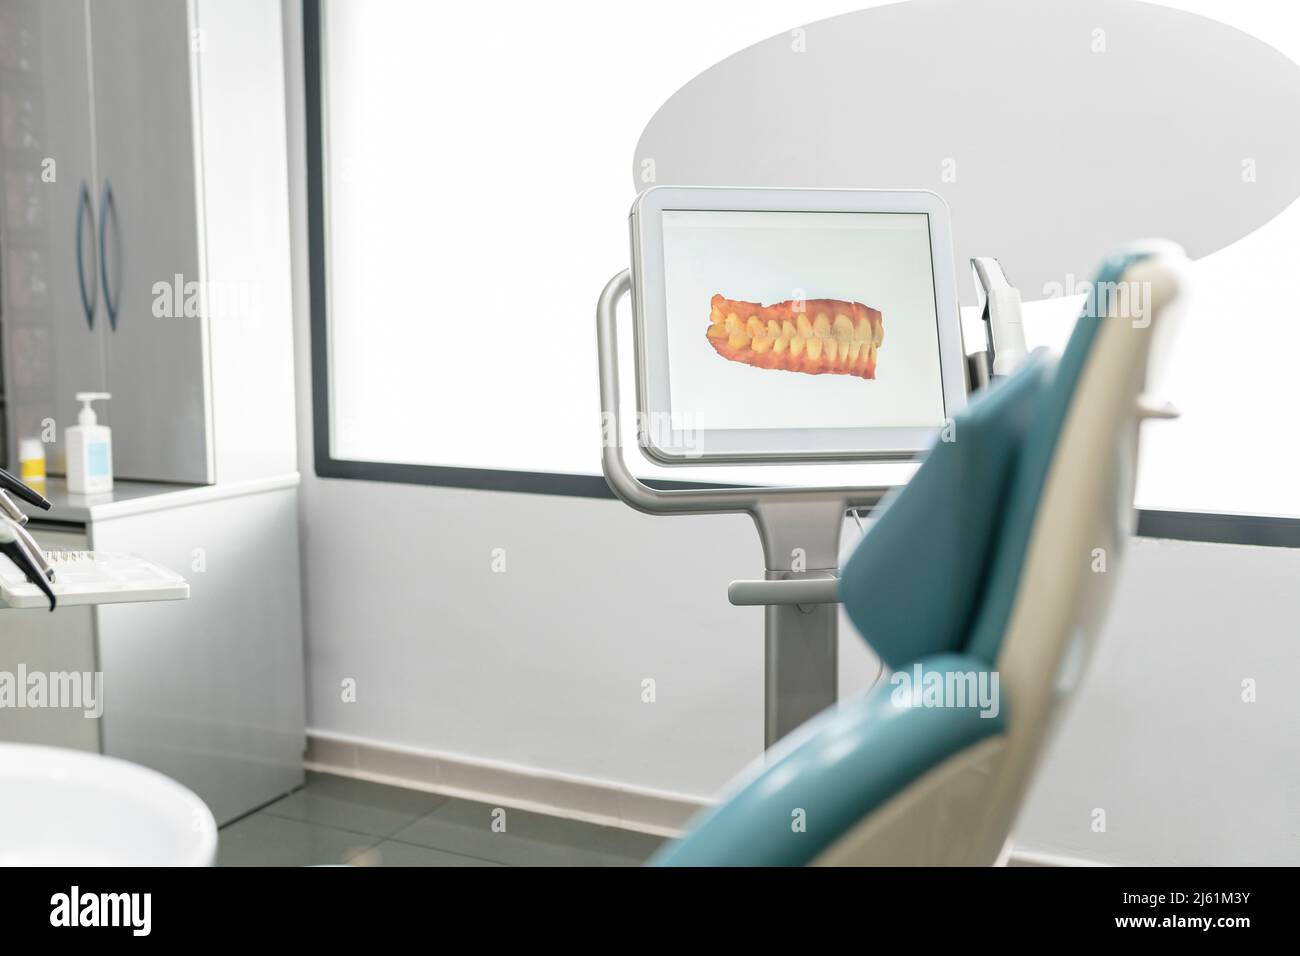 Imagen escaneada de los dientes en la pantalla del monitor en la clínica dental moderna Foto de stock